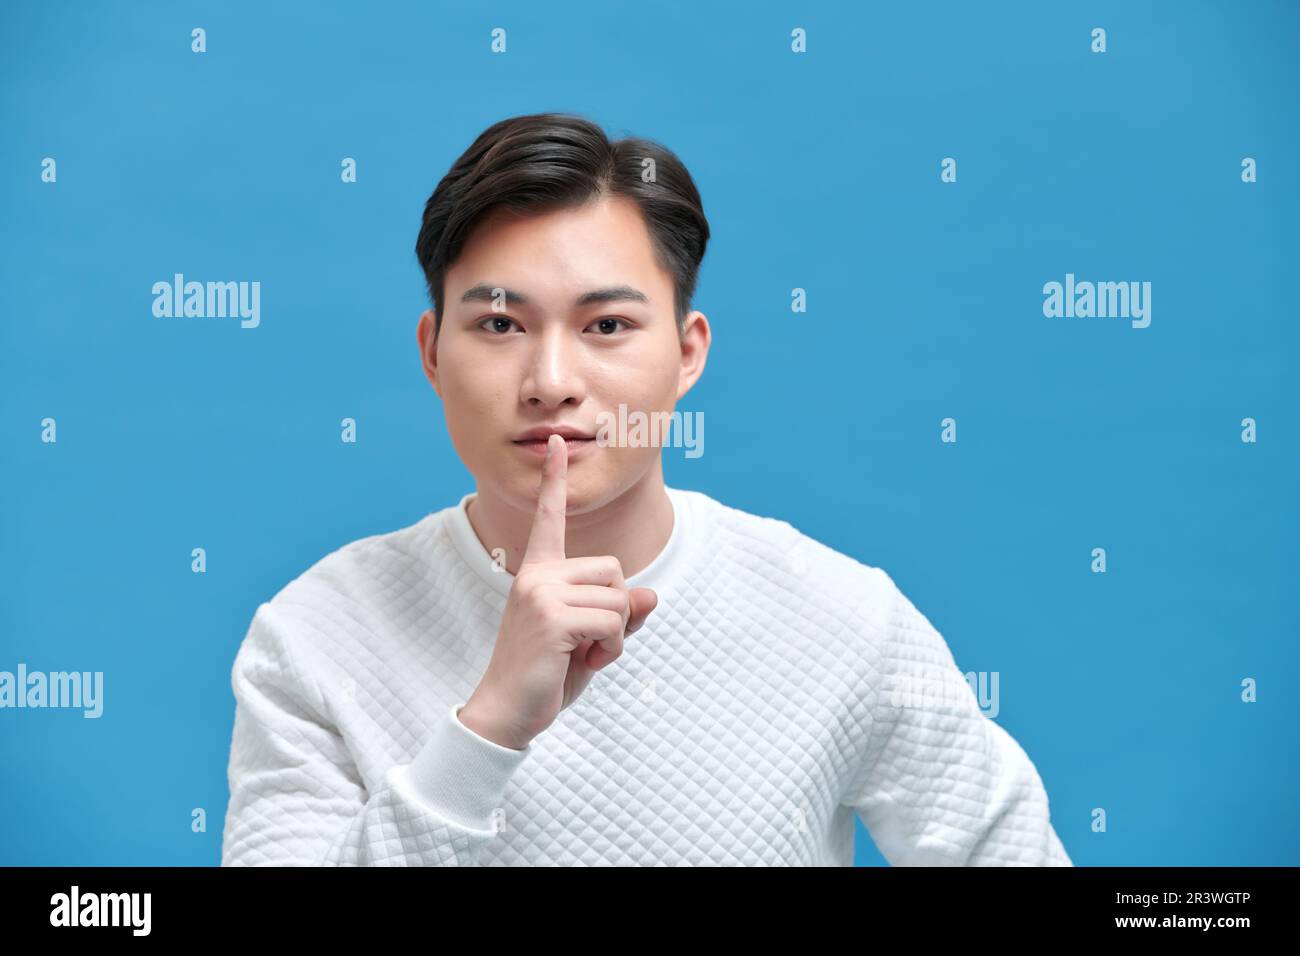 Porträt eines seriösen jungen Asiaten, der ein Zeichen der Stille zeigt, indem er die Finger in den Mund steckt Stockfoto